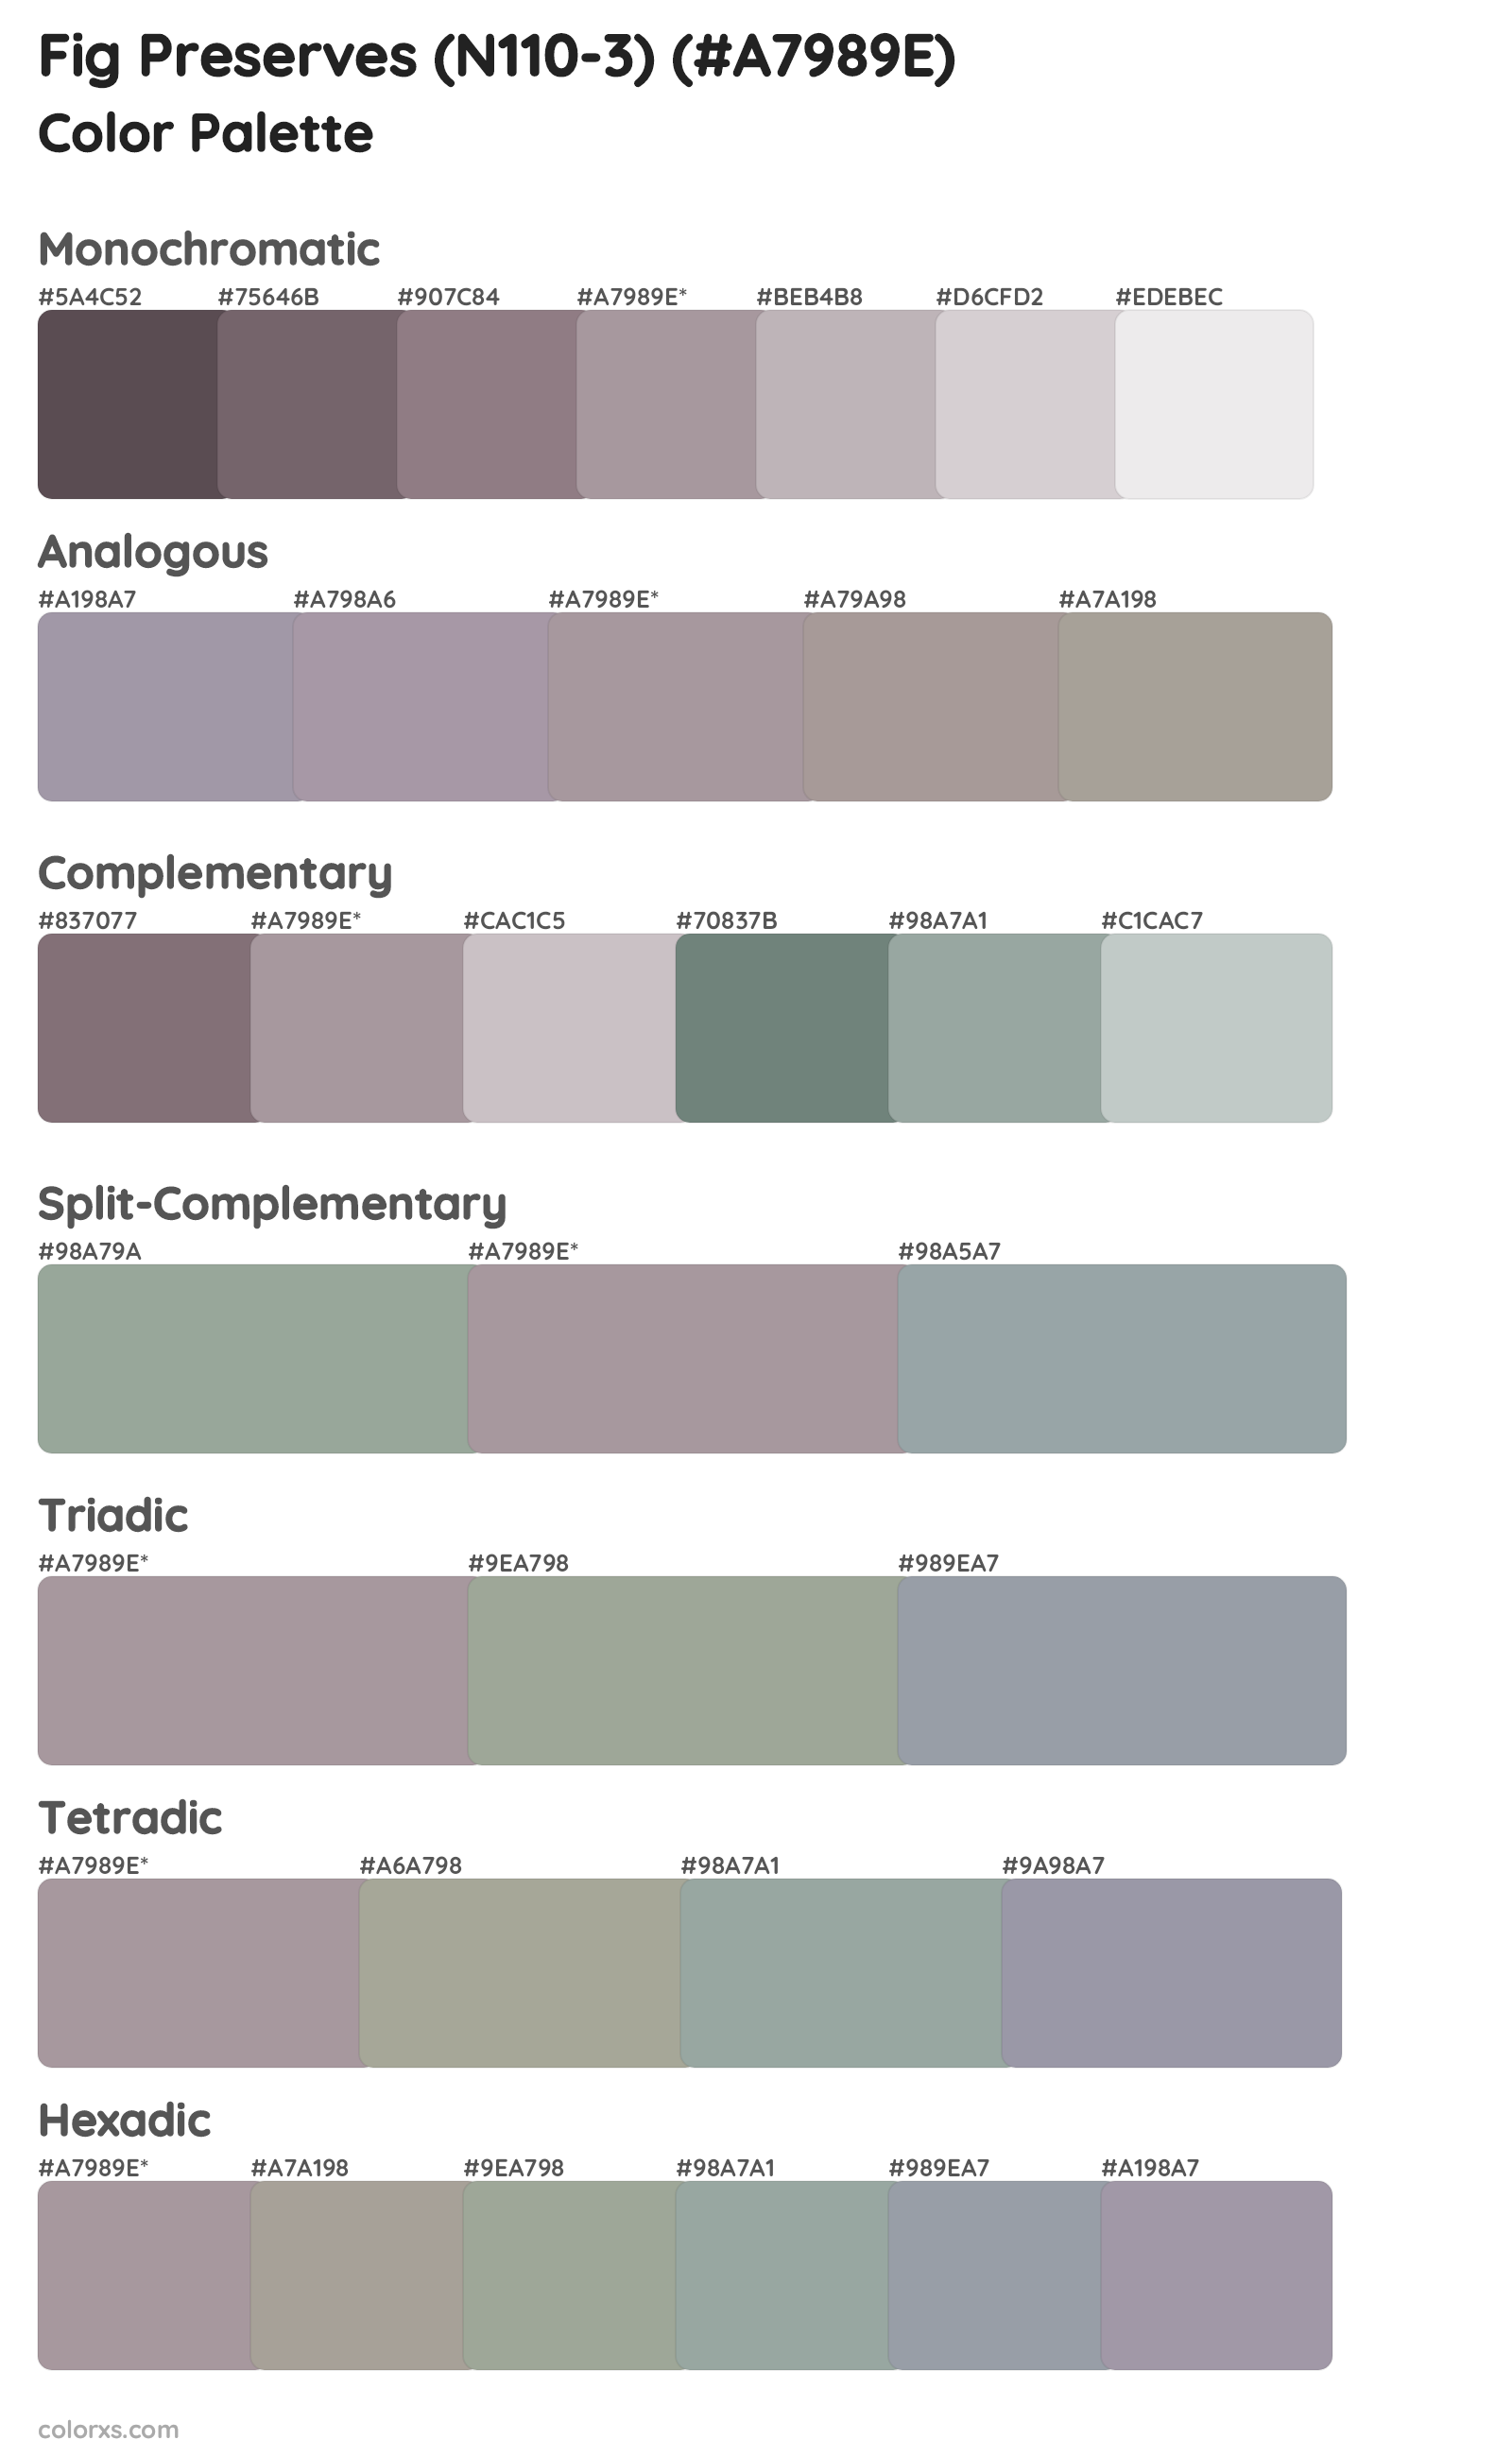 Fig Preserves (N110-3) Color Scheme Palettes